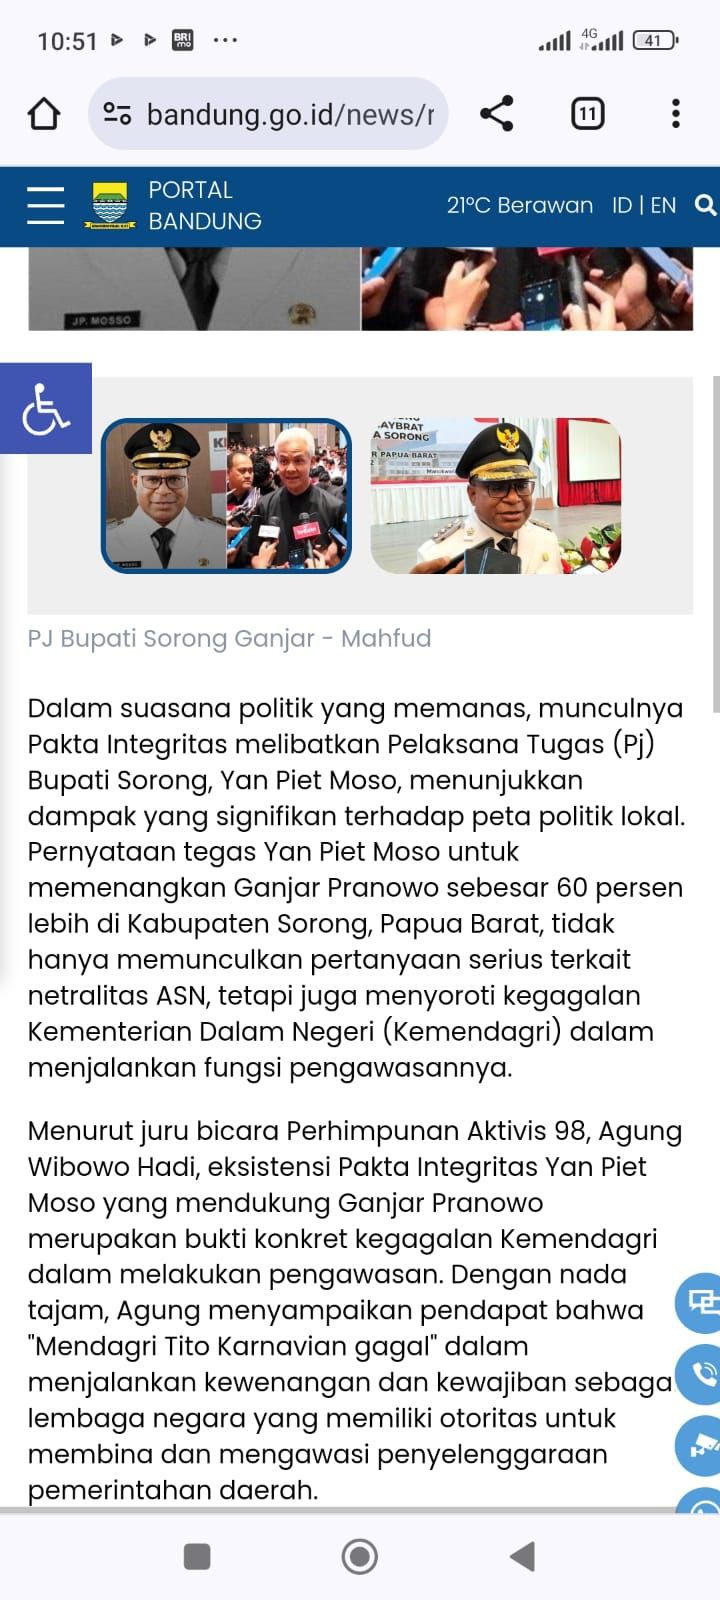 Laman Pemkot Bandung Unggah Berita PDI-P hingga Pemenangan Ganjar